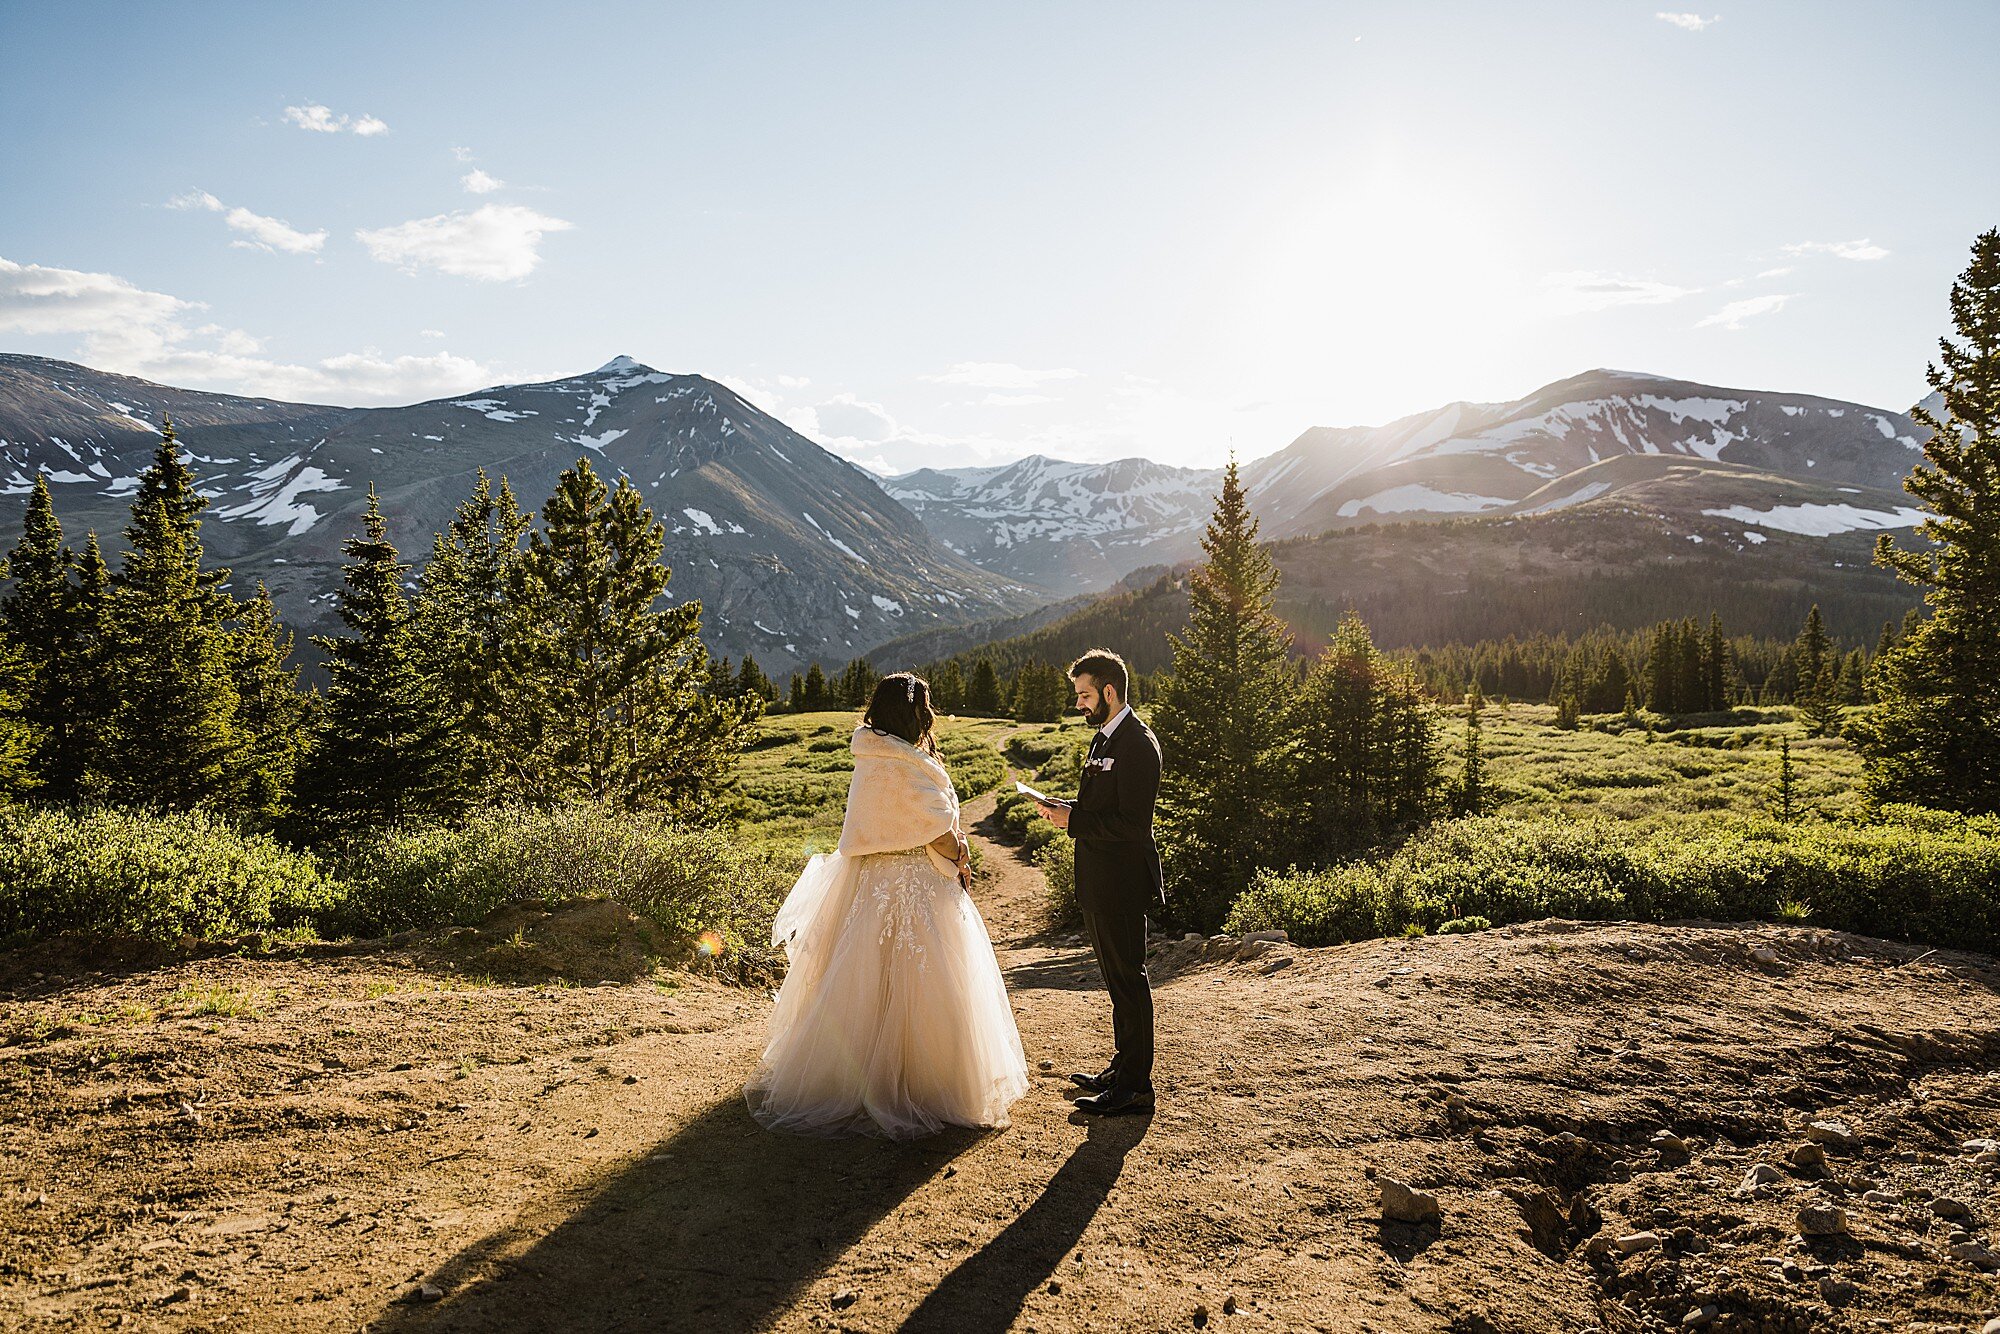 Colorado Mountaintop Wedding | Colorado Elopement Photographer and Videographer | Vow of the Wild